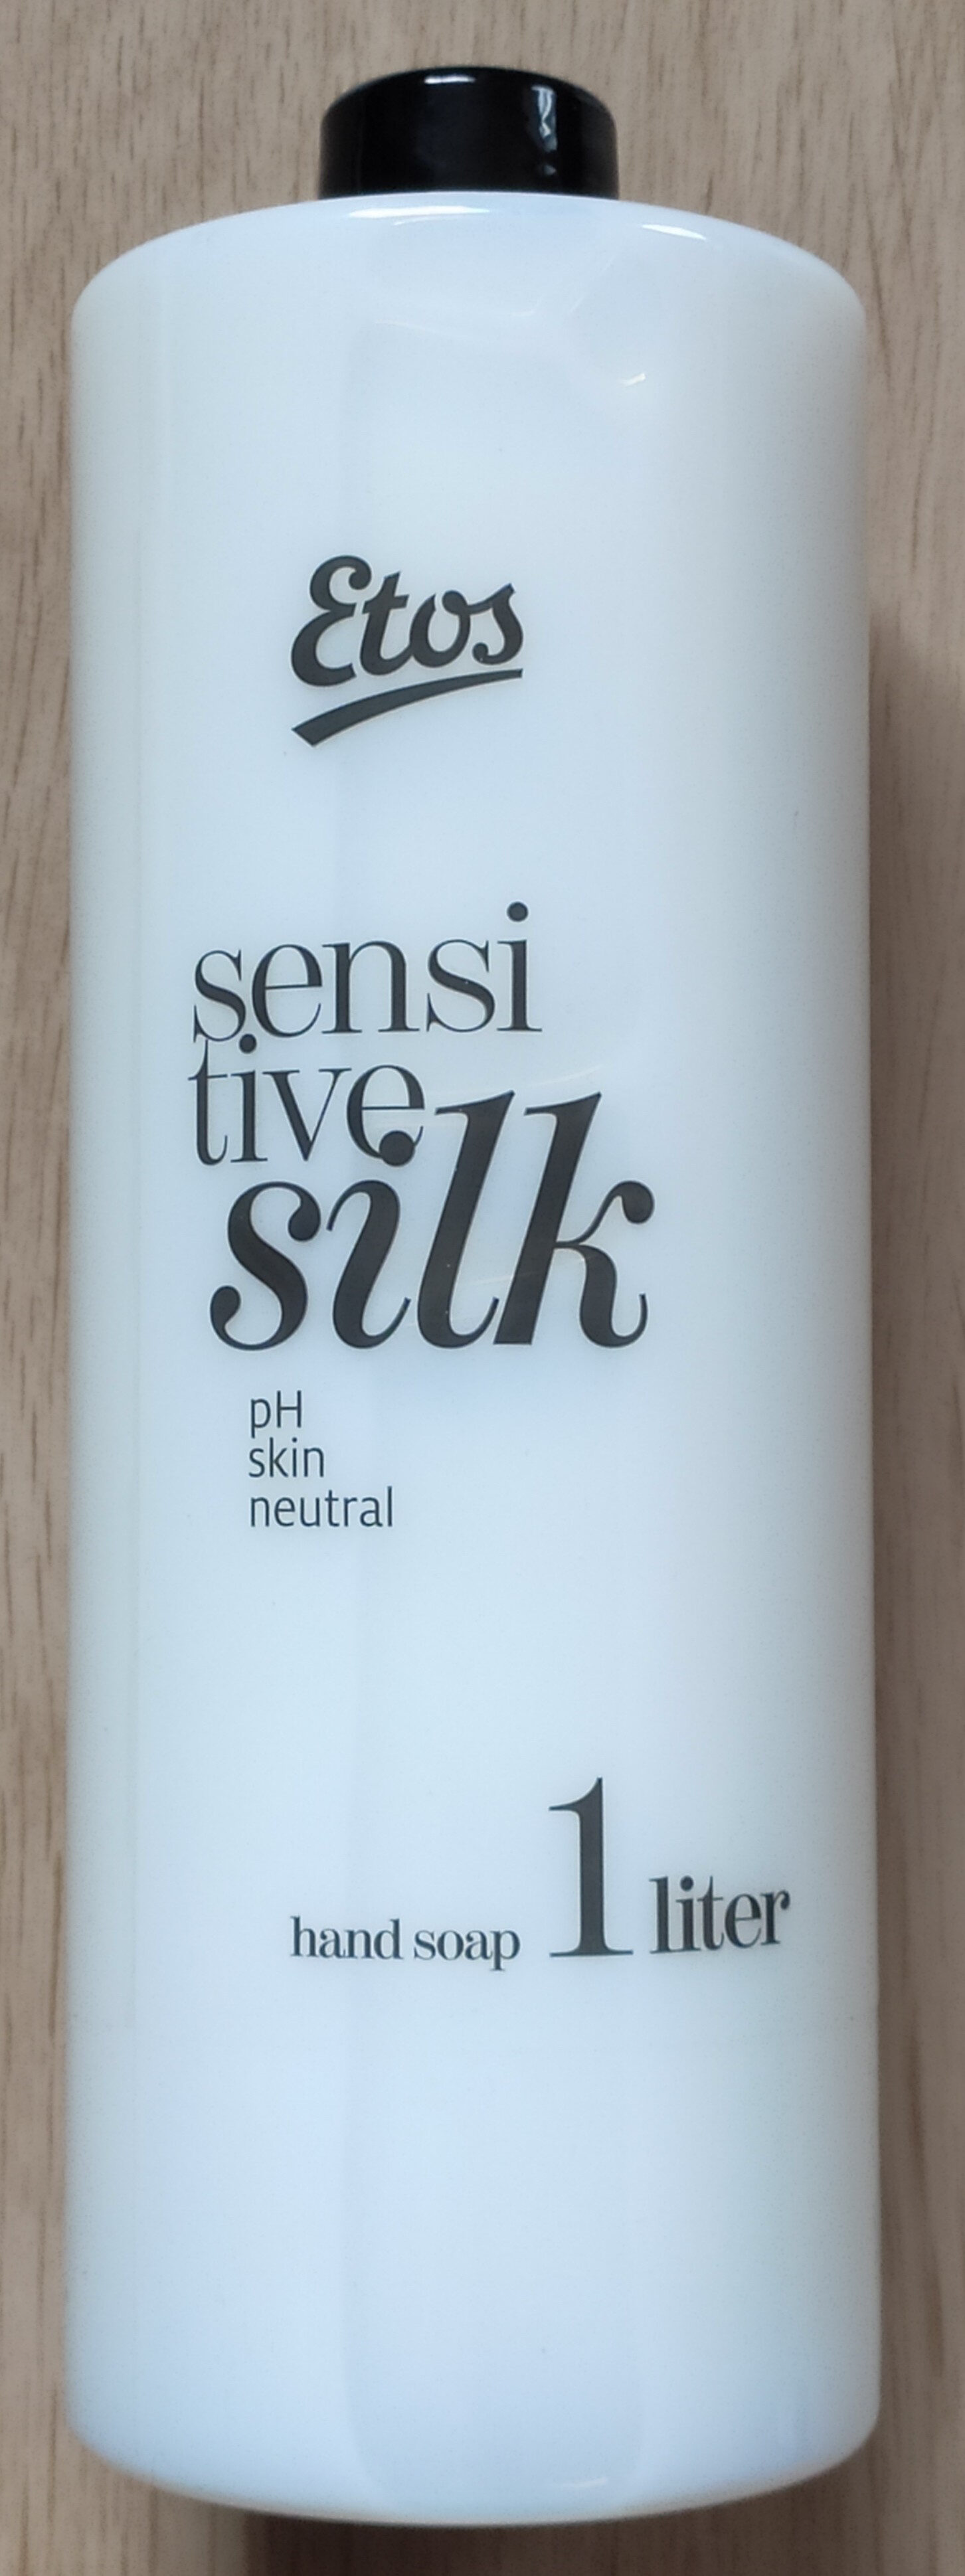 Etos sensitive silk - Tuote - fr